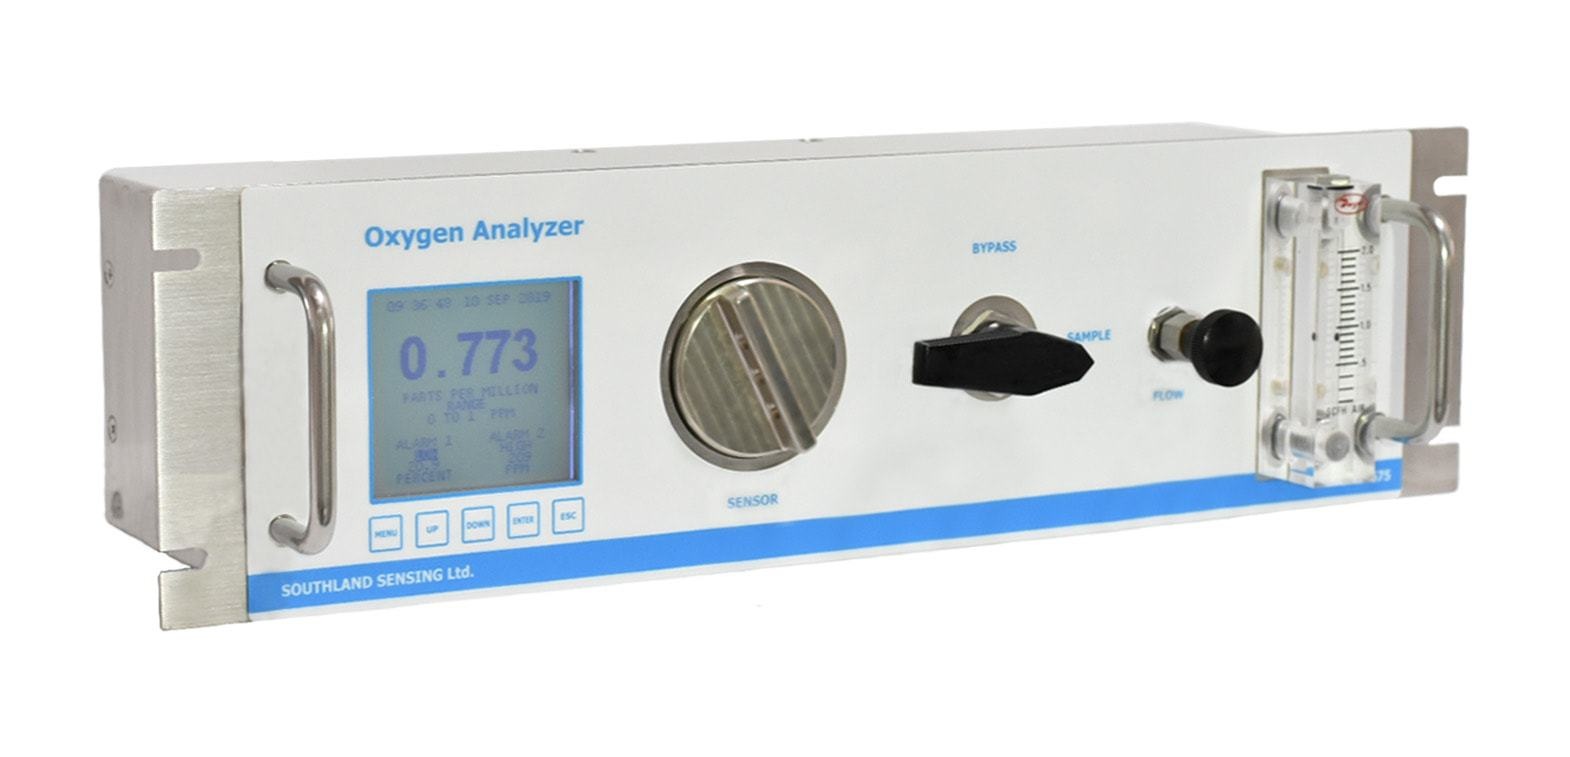 微氧分析仪OMD-675-10的图片